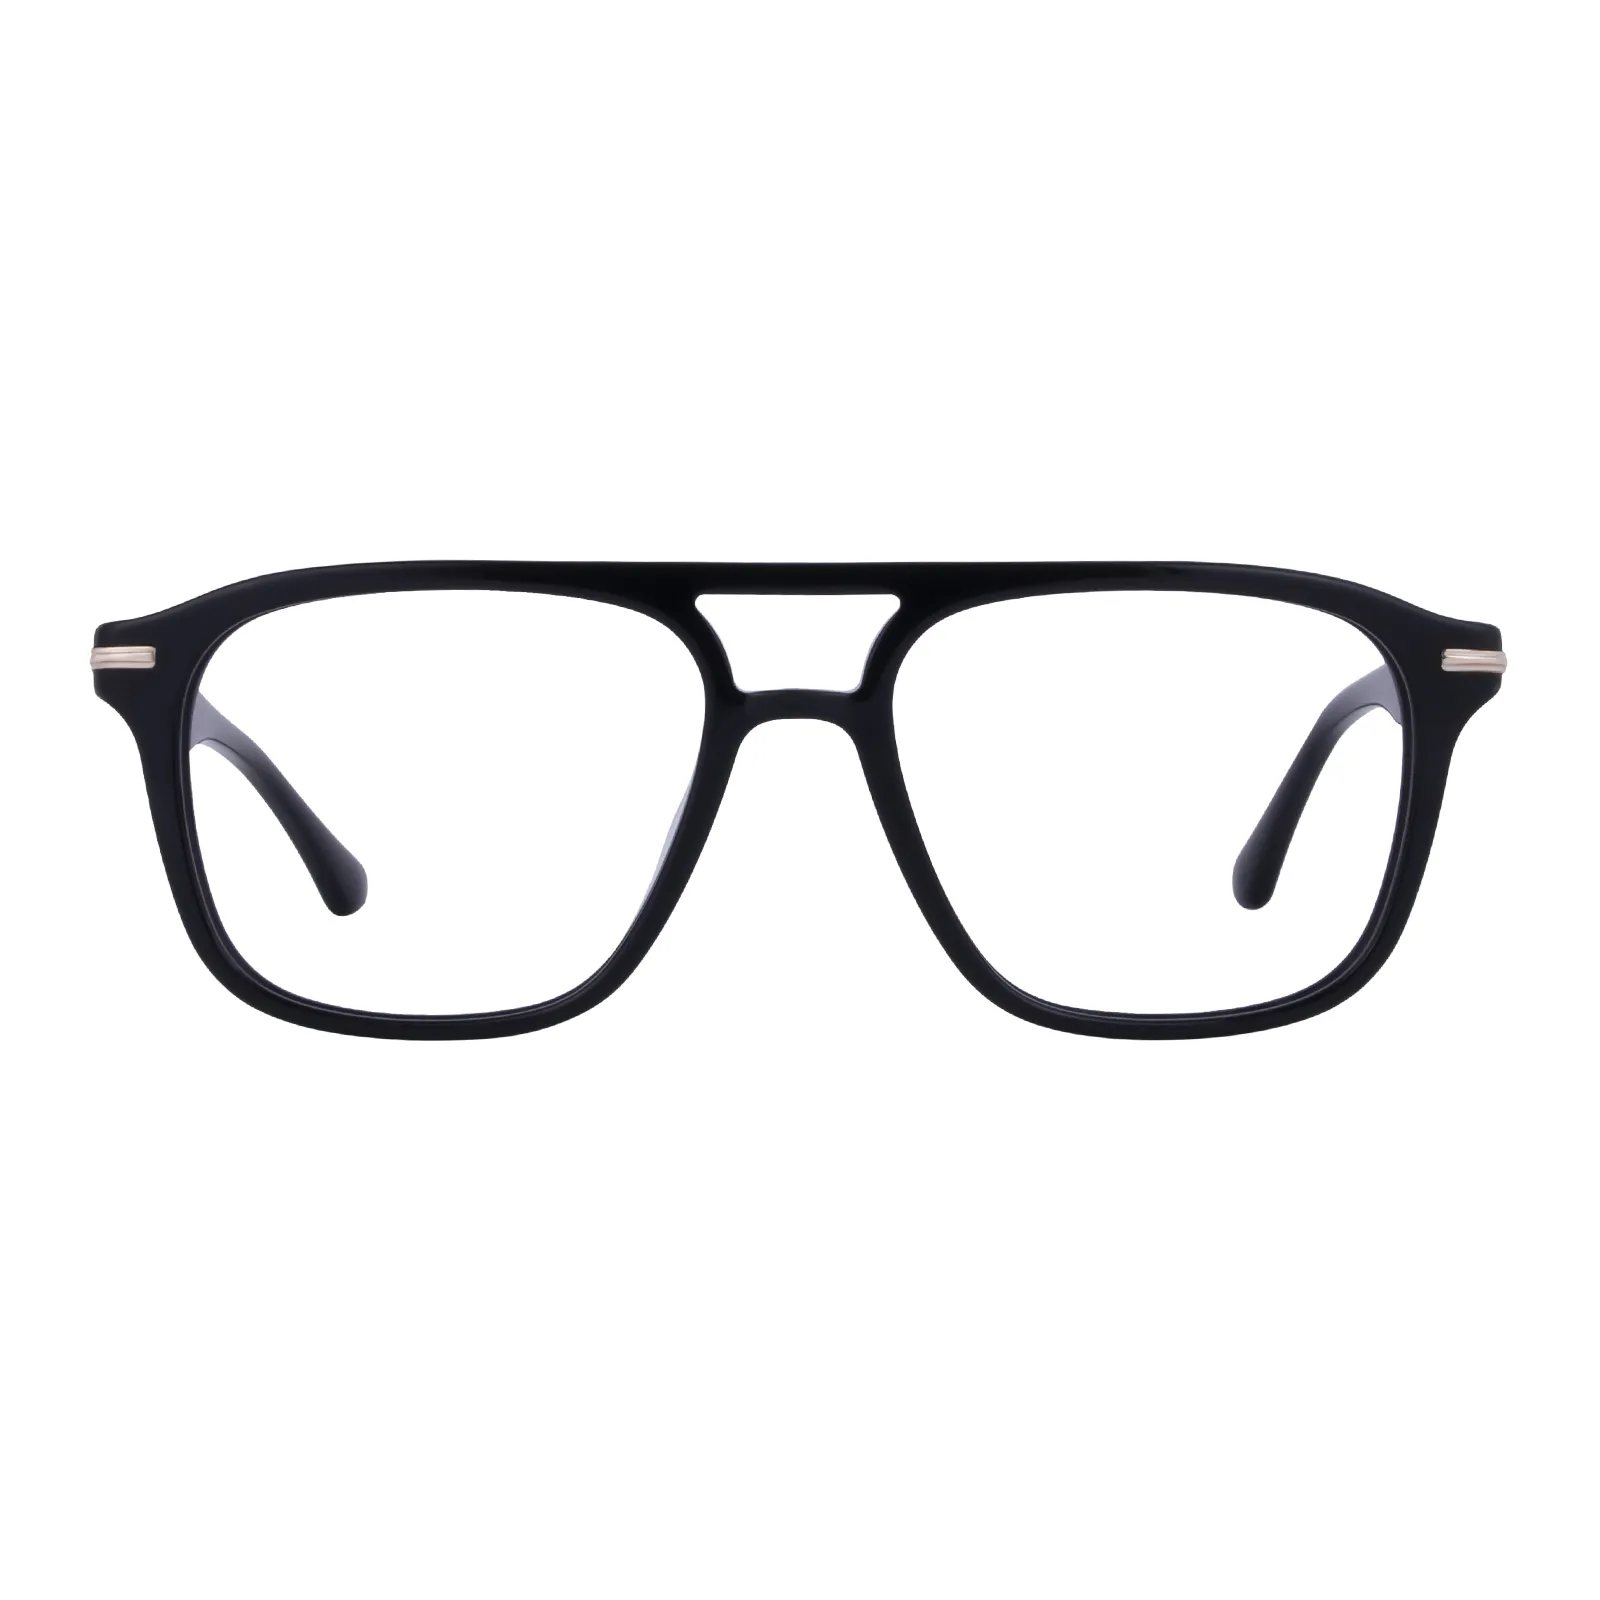 Wesley - Aviator Black Glasses for Men & Women